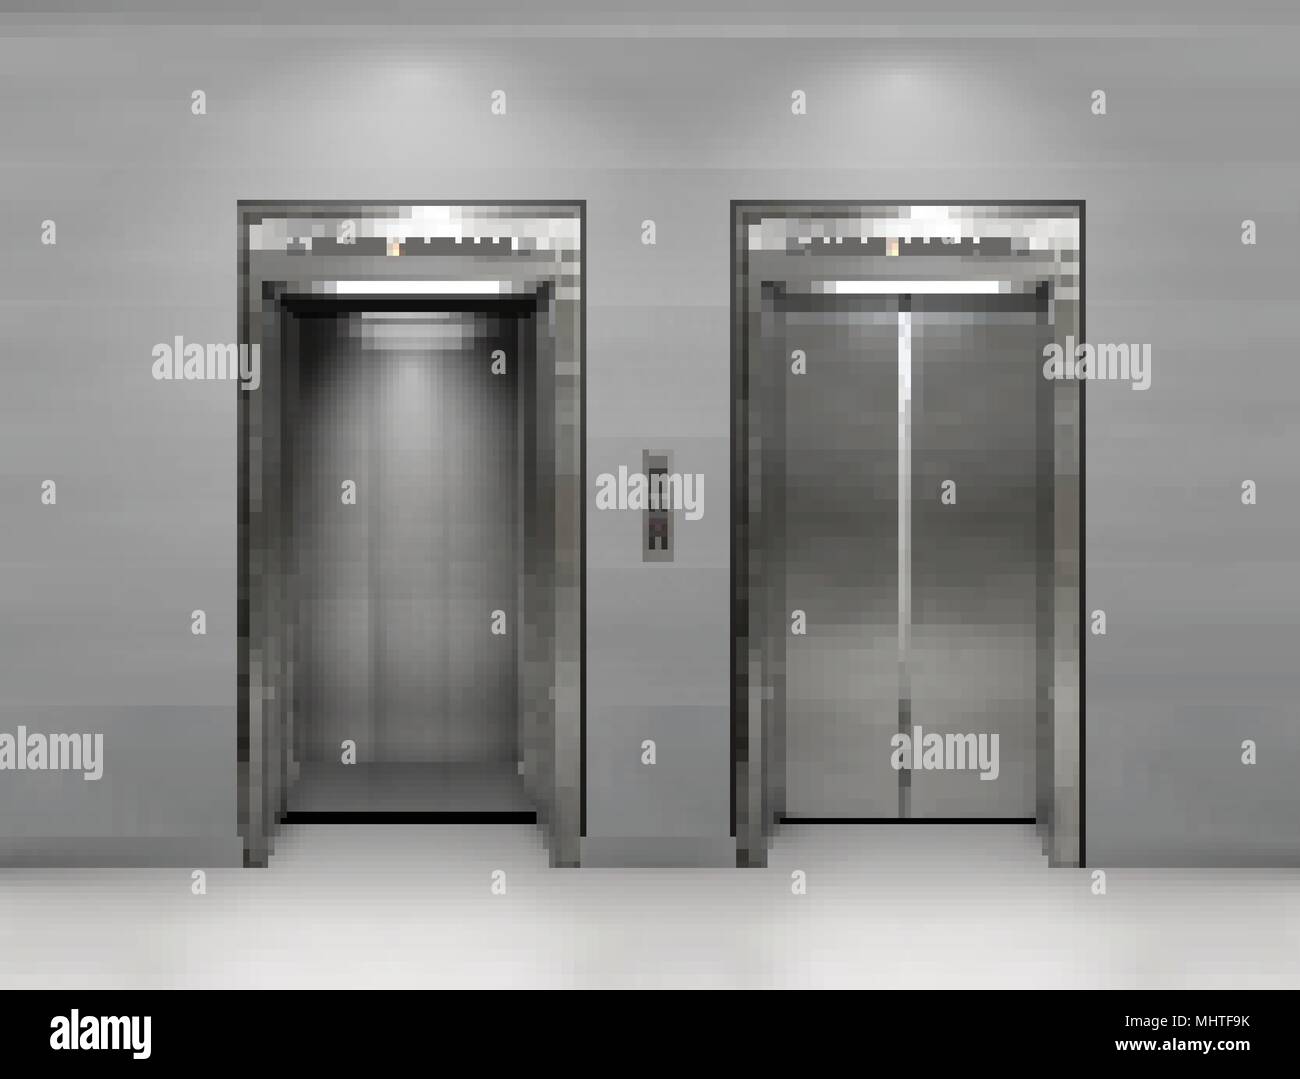 Immeuble de bureau en métal chromé porte de l'ascenseur. La variante ouverte et fermée. Vector illustration réaliste des panneaux de mur gris ascenseur immeuble de bureaux. Illustration de Vecteur